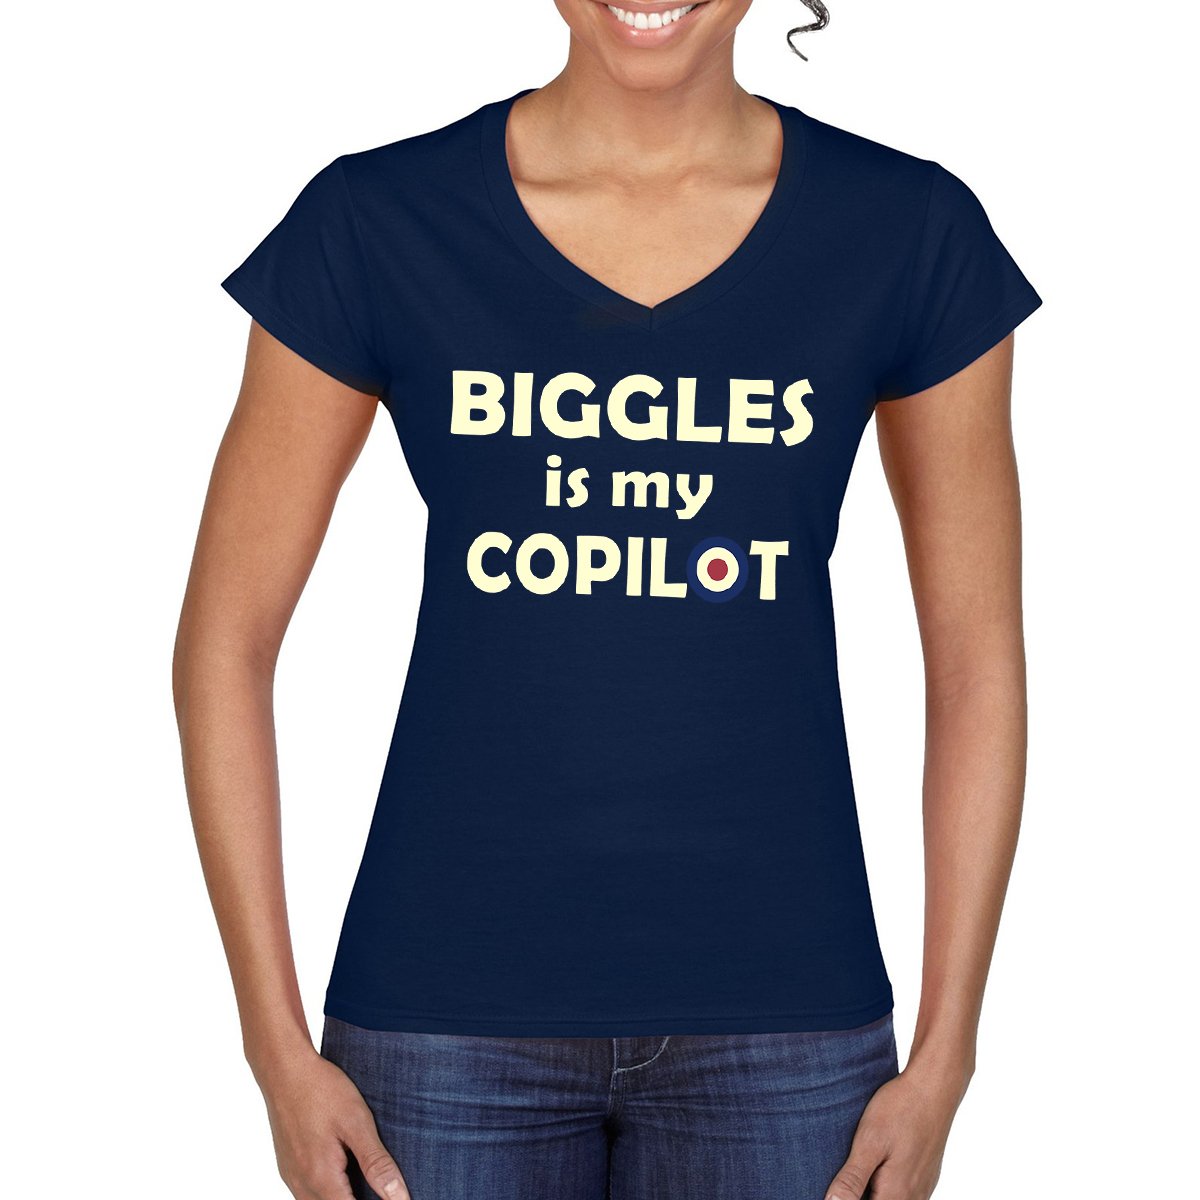 BIGGLES IS MY COPILOT Women's V-Neck Tee